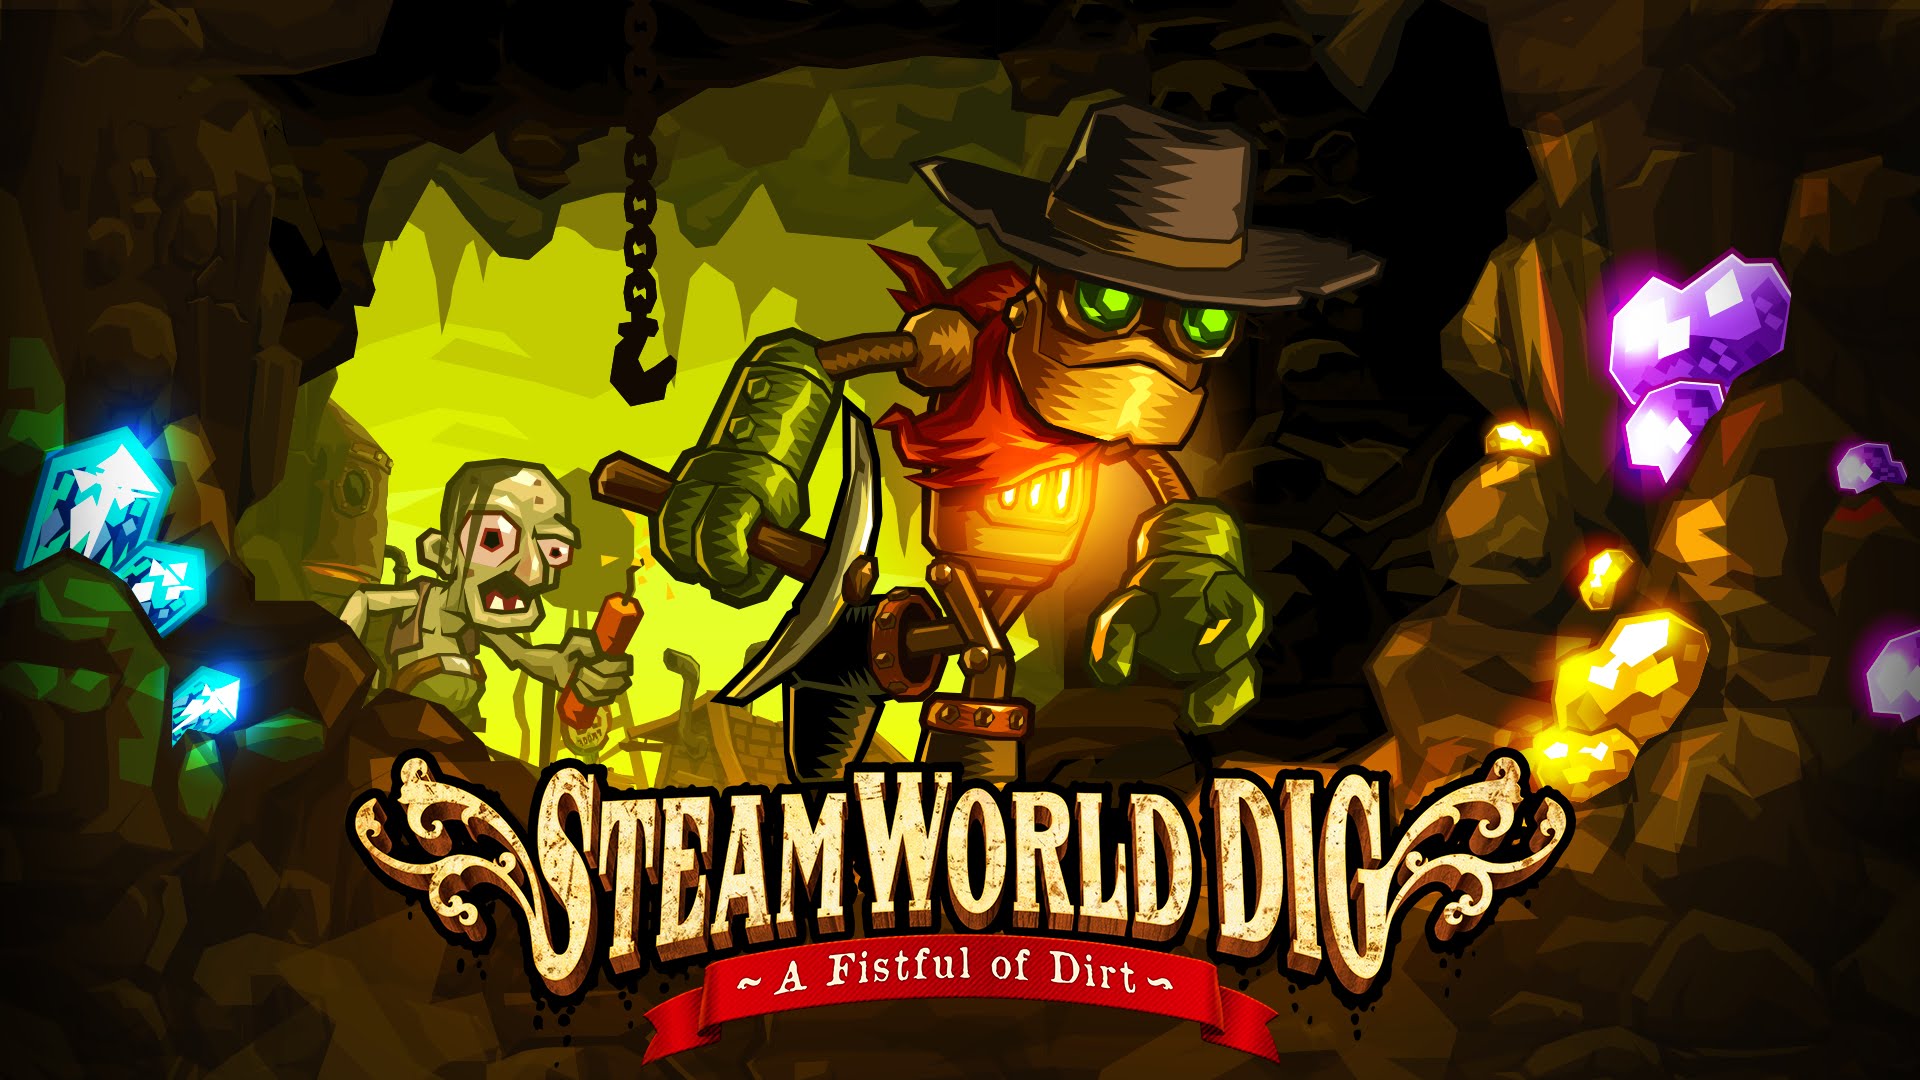 steamworld dig 2 cia